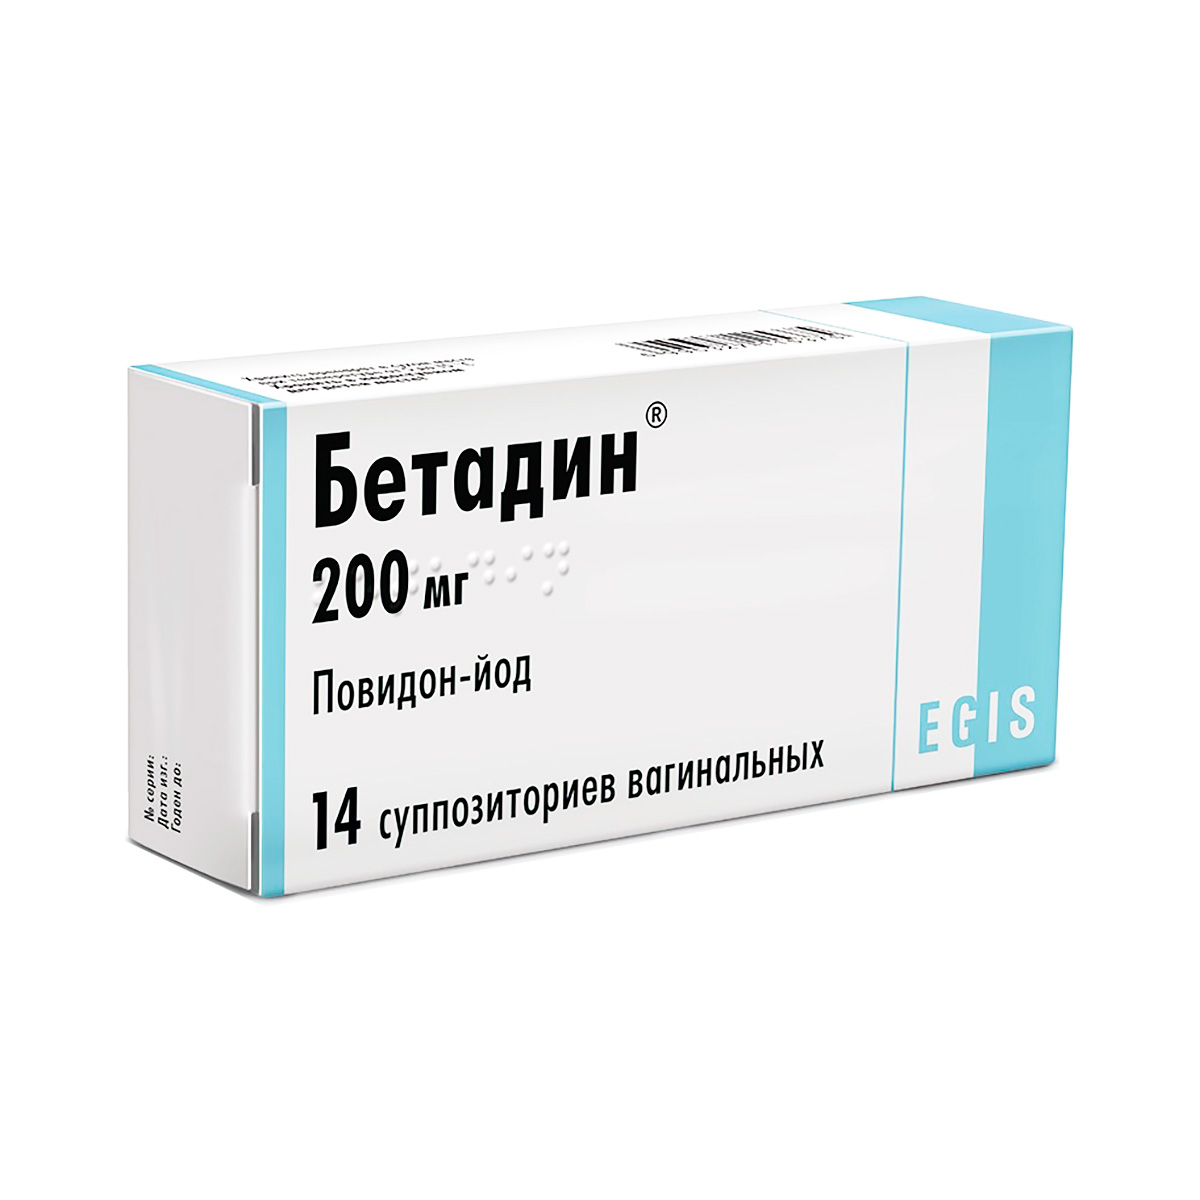 Бетадин 200 мг суппозитории вагинальные 14 шт